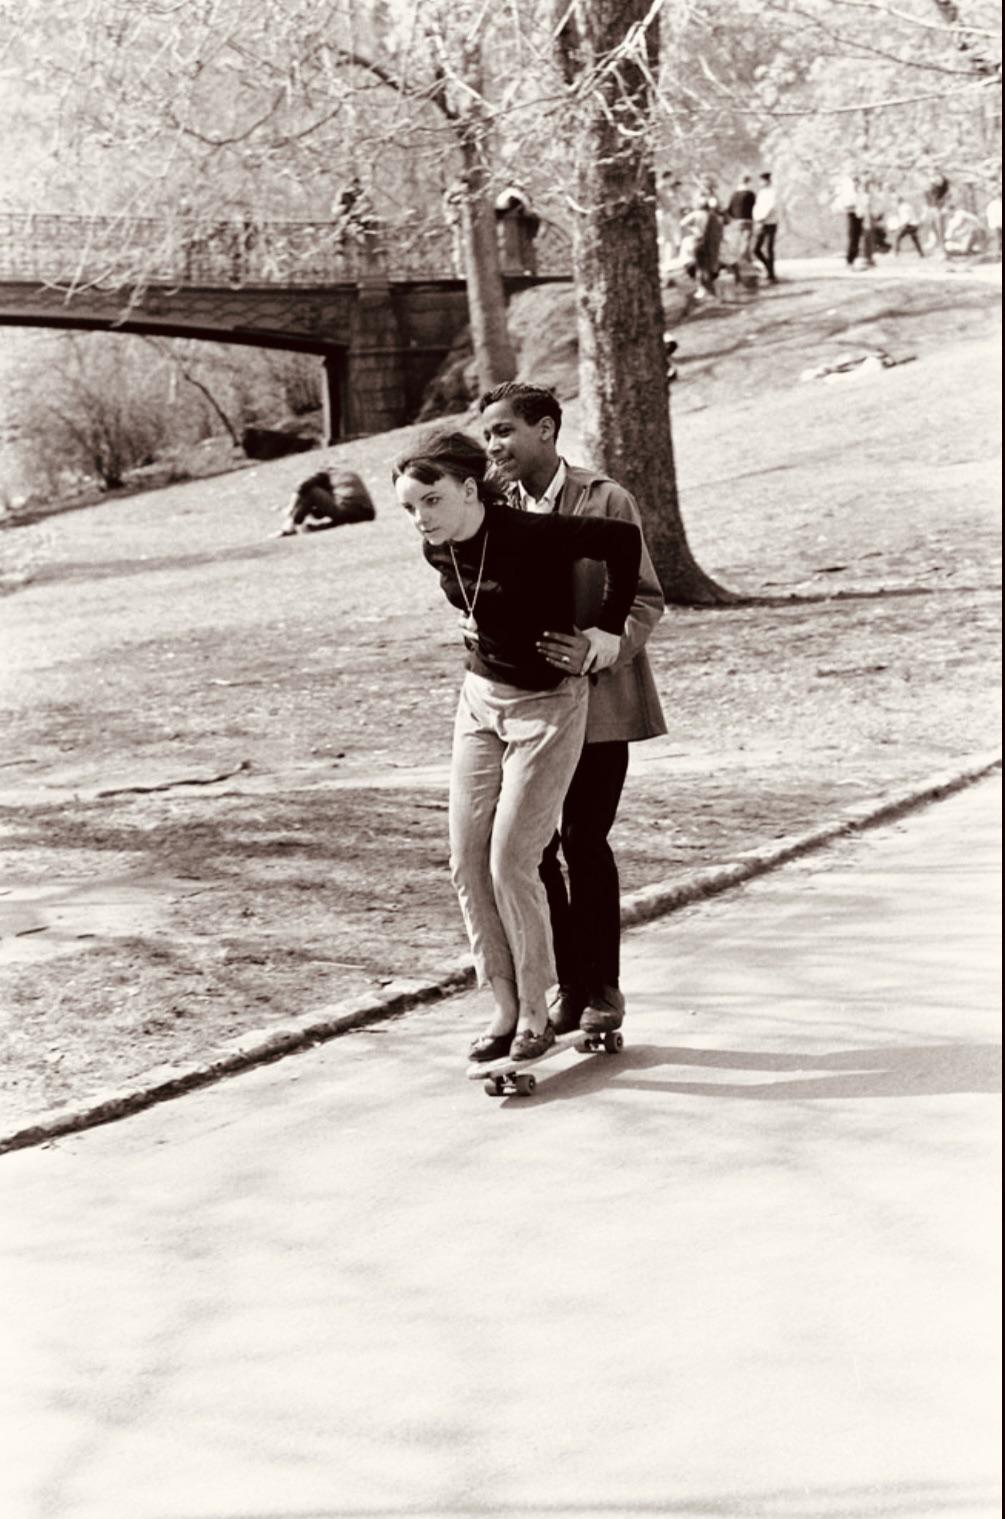 Skateboarding in central park, New York City, 1965.jpg